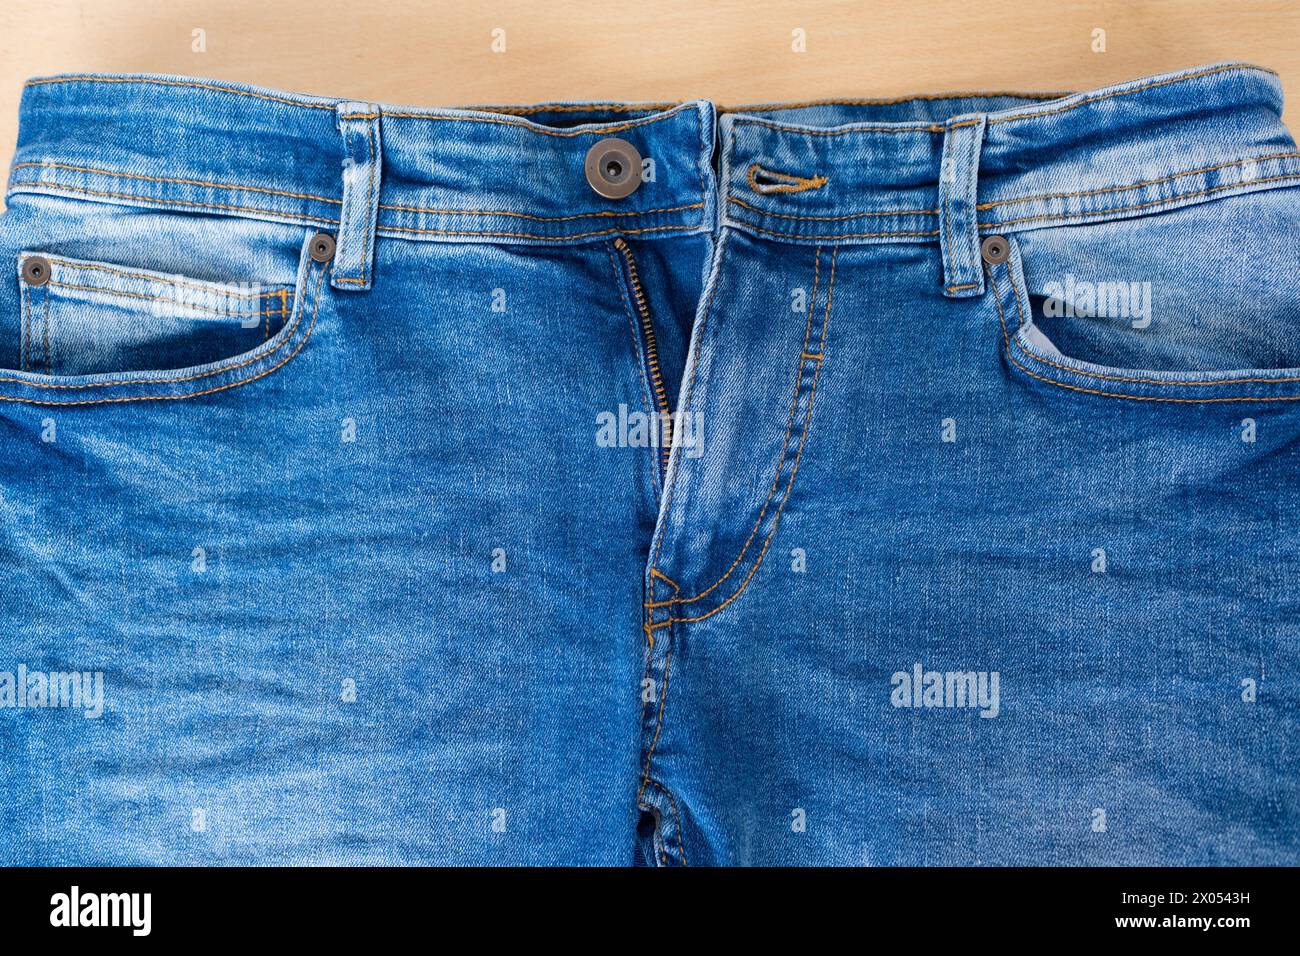 Un paio di jeans da uomo blu dalla vestibilità rilassata con mosca senza zip, splendidi pantaloni in denim da uomo, perfetti per uno stile disinvolto e disinvolto Foto Stock